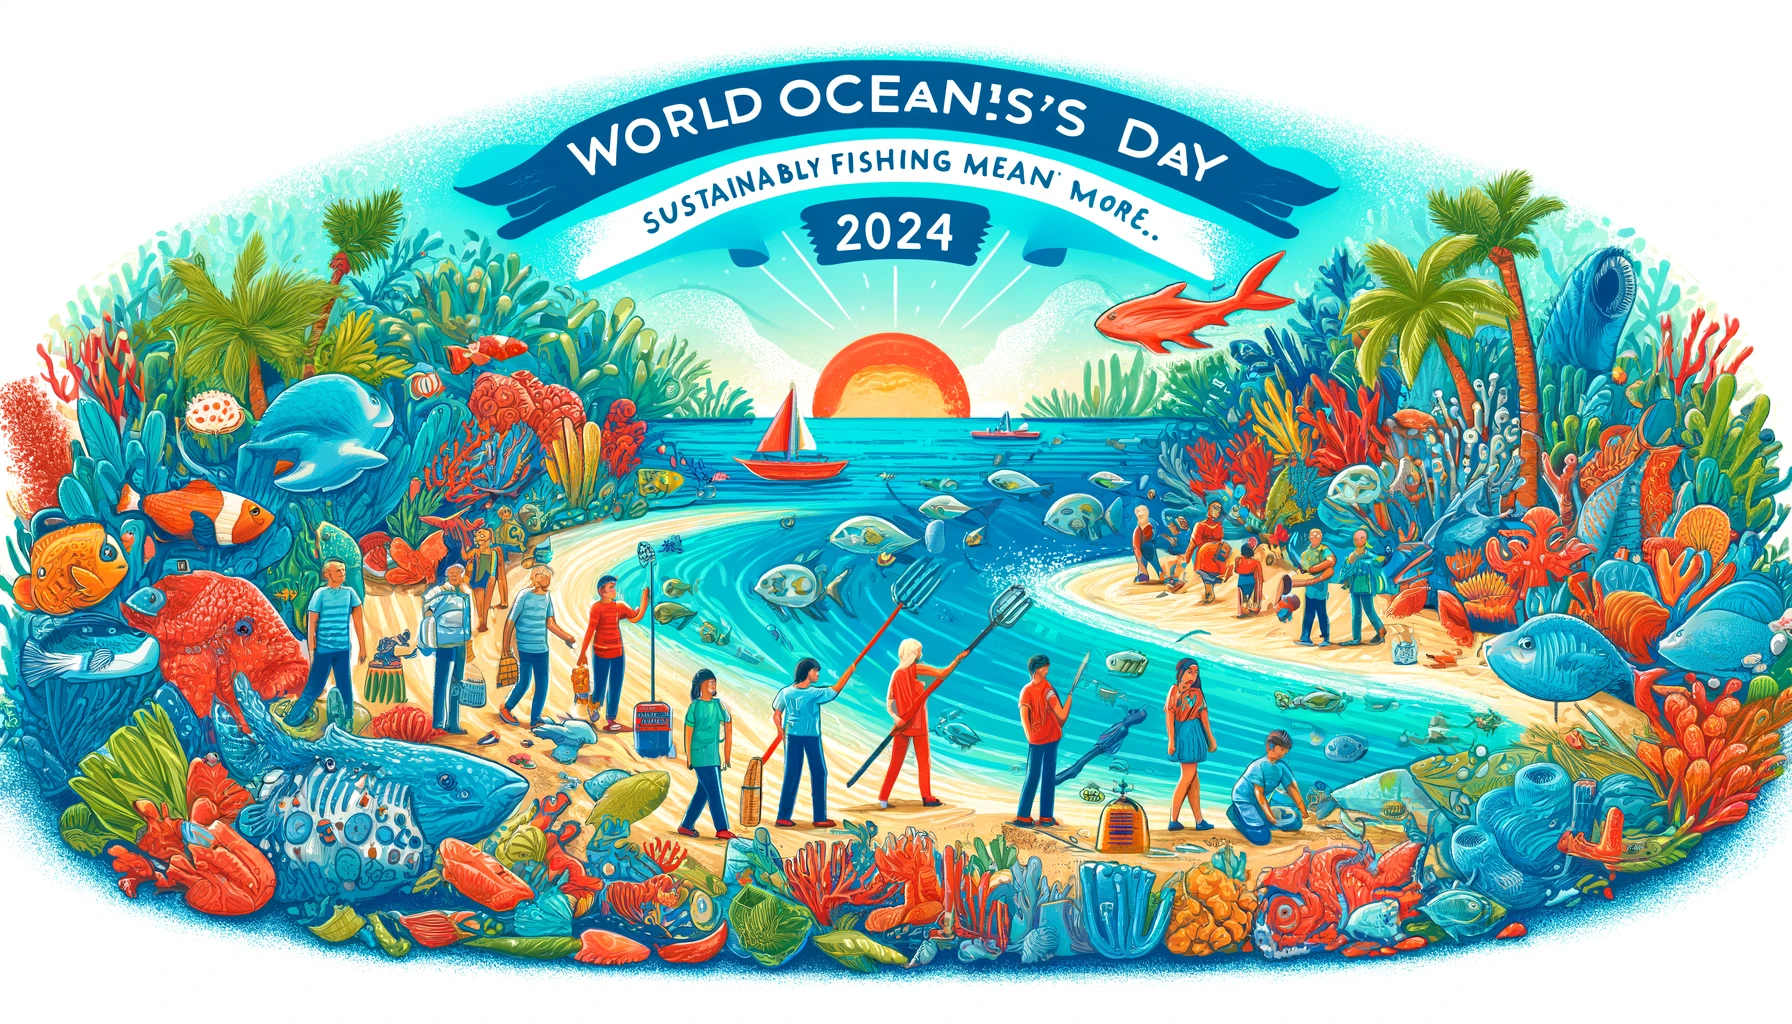 Welttag der Ozeane 2024: Ein globaler Aufruf zum Schutz unserer blauen Planeten